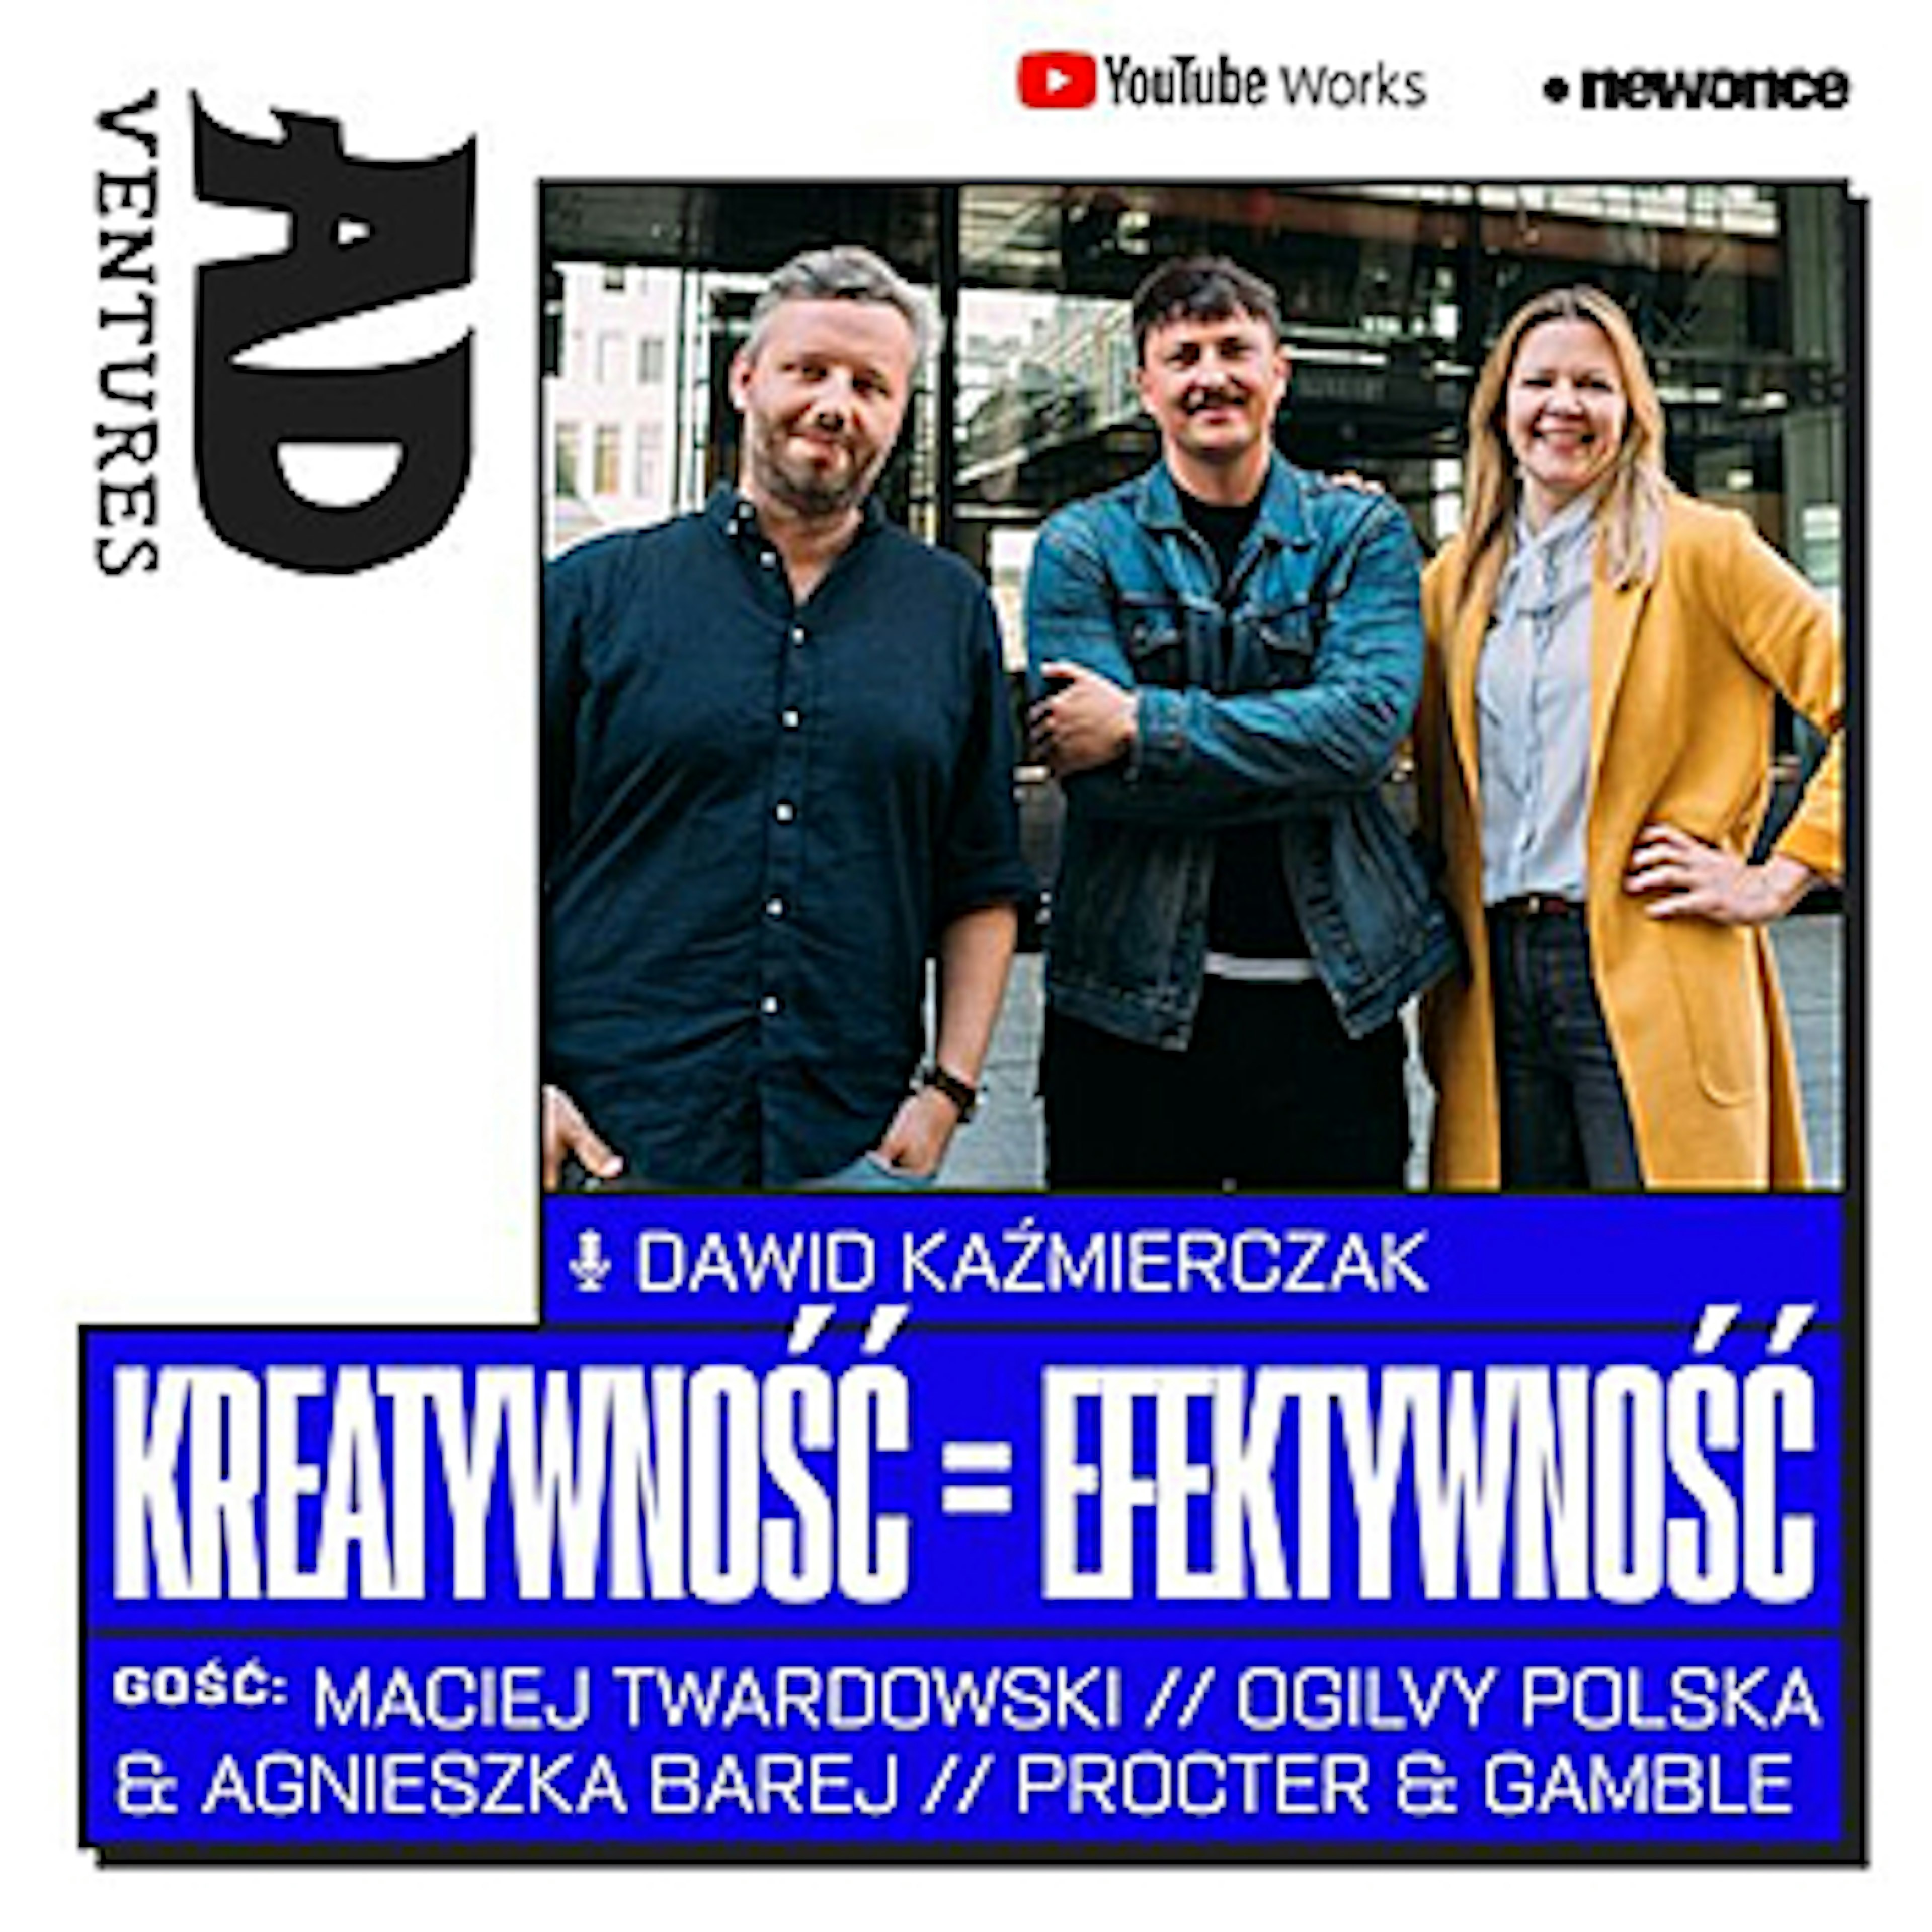 ADventures - Przygoda #8 Kiedy kreatywność = efektywność? Agnieszka Barej & Maciej Twardowski